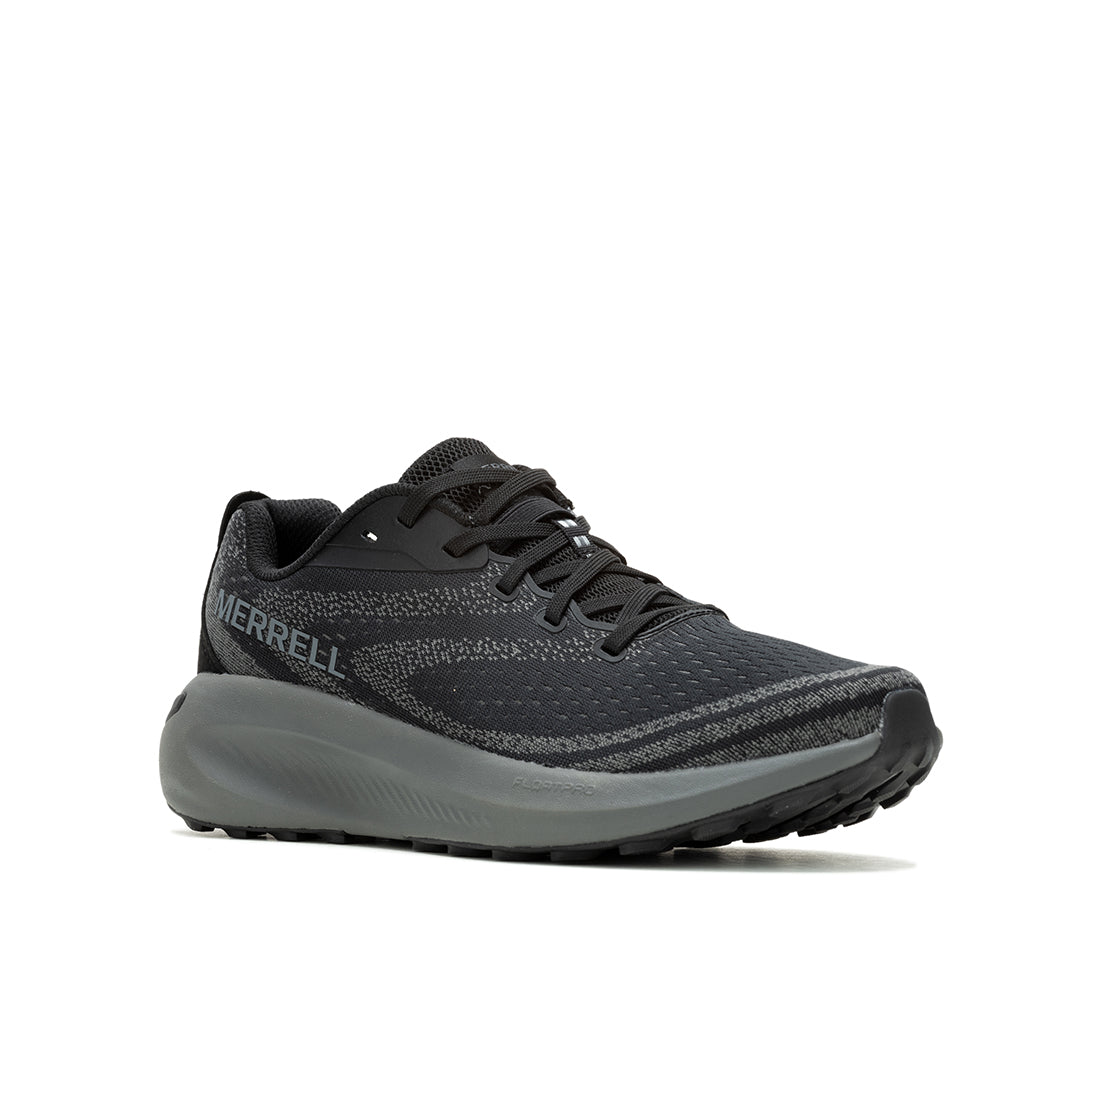 Morphlite - Black/Asphalt Mens Trail Running Shoes